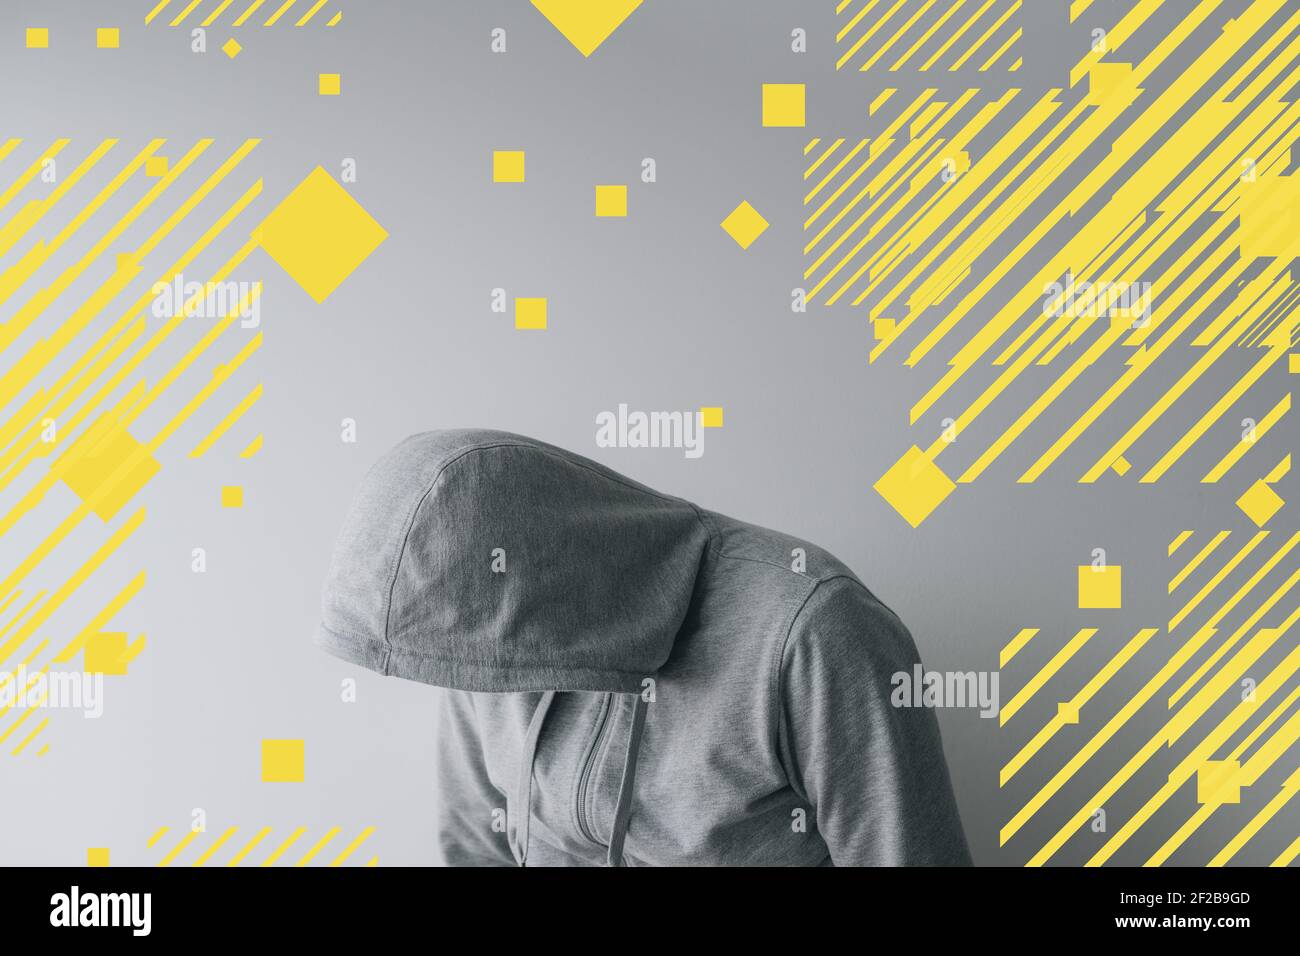 Uomo depresso, uomo con felpa con cappuccio ed elemento grafico, fotografia multimediale mista Foto Stock